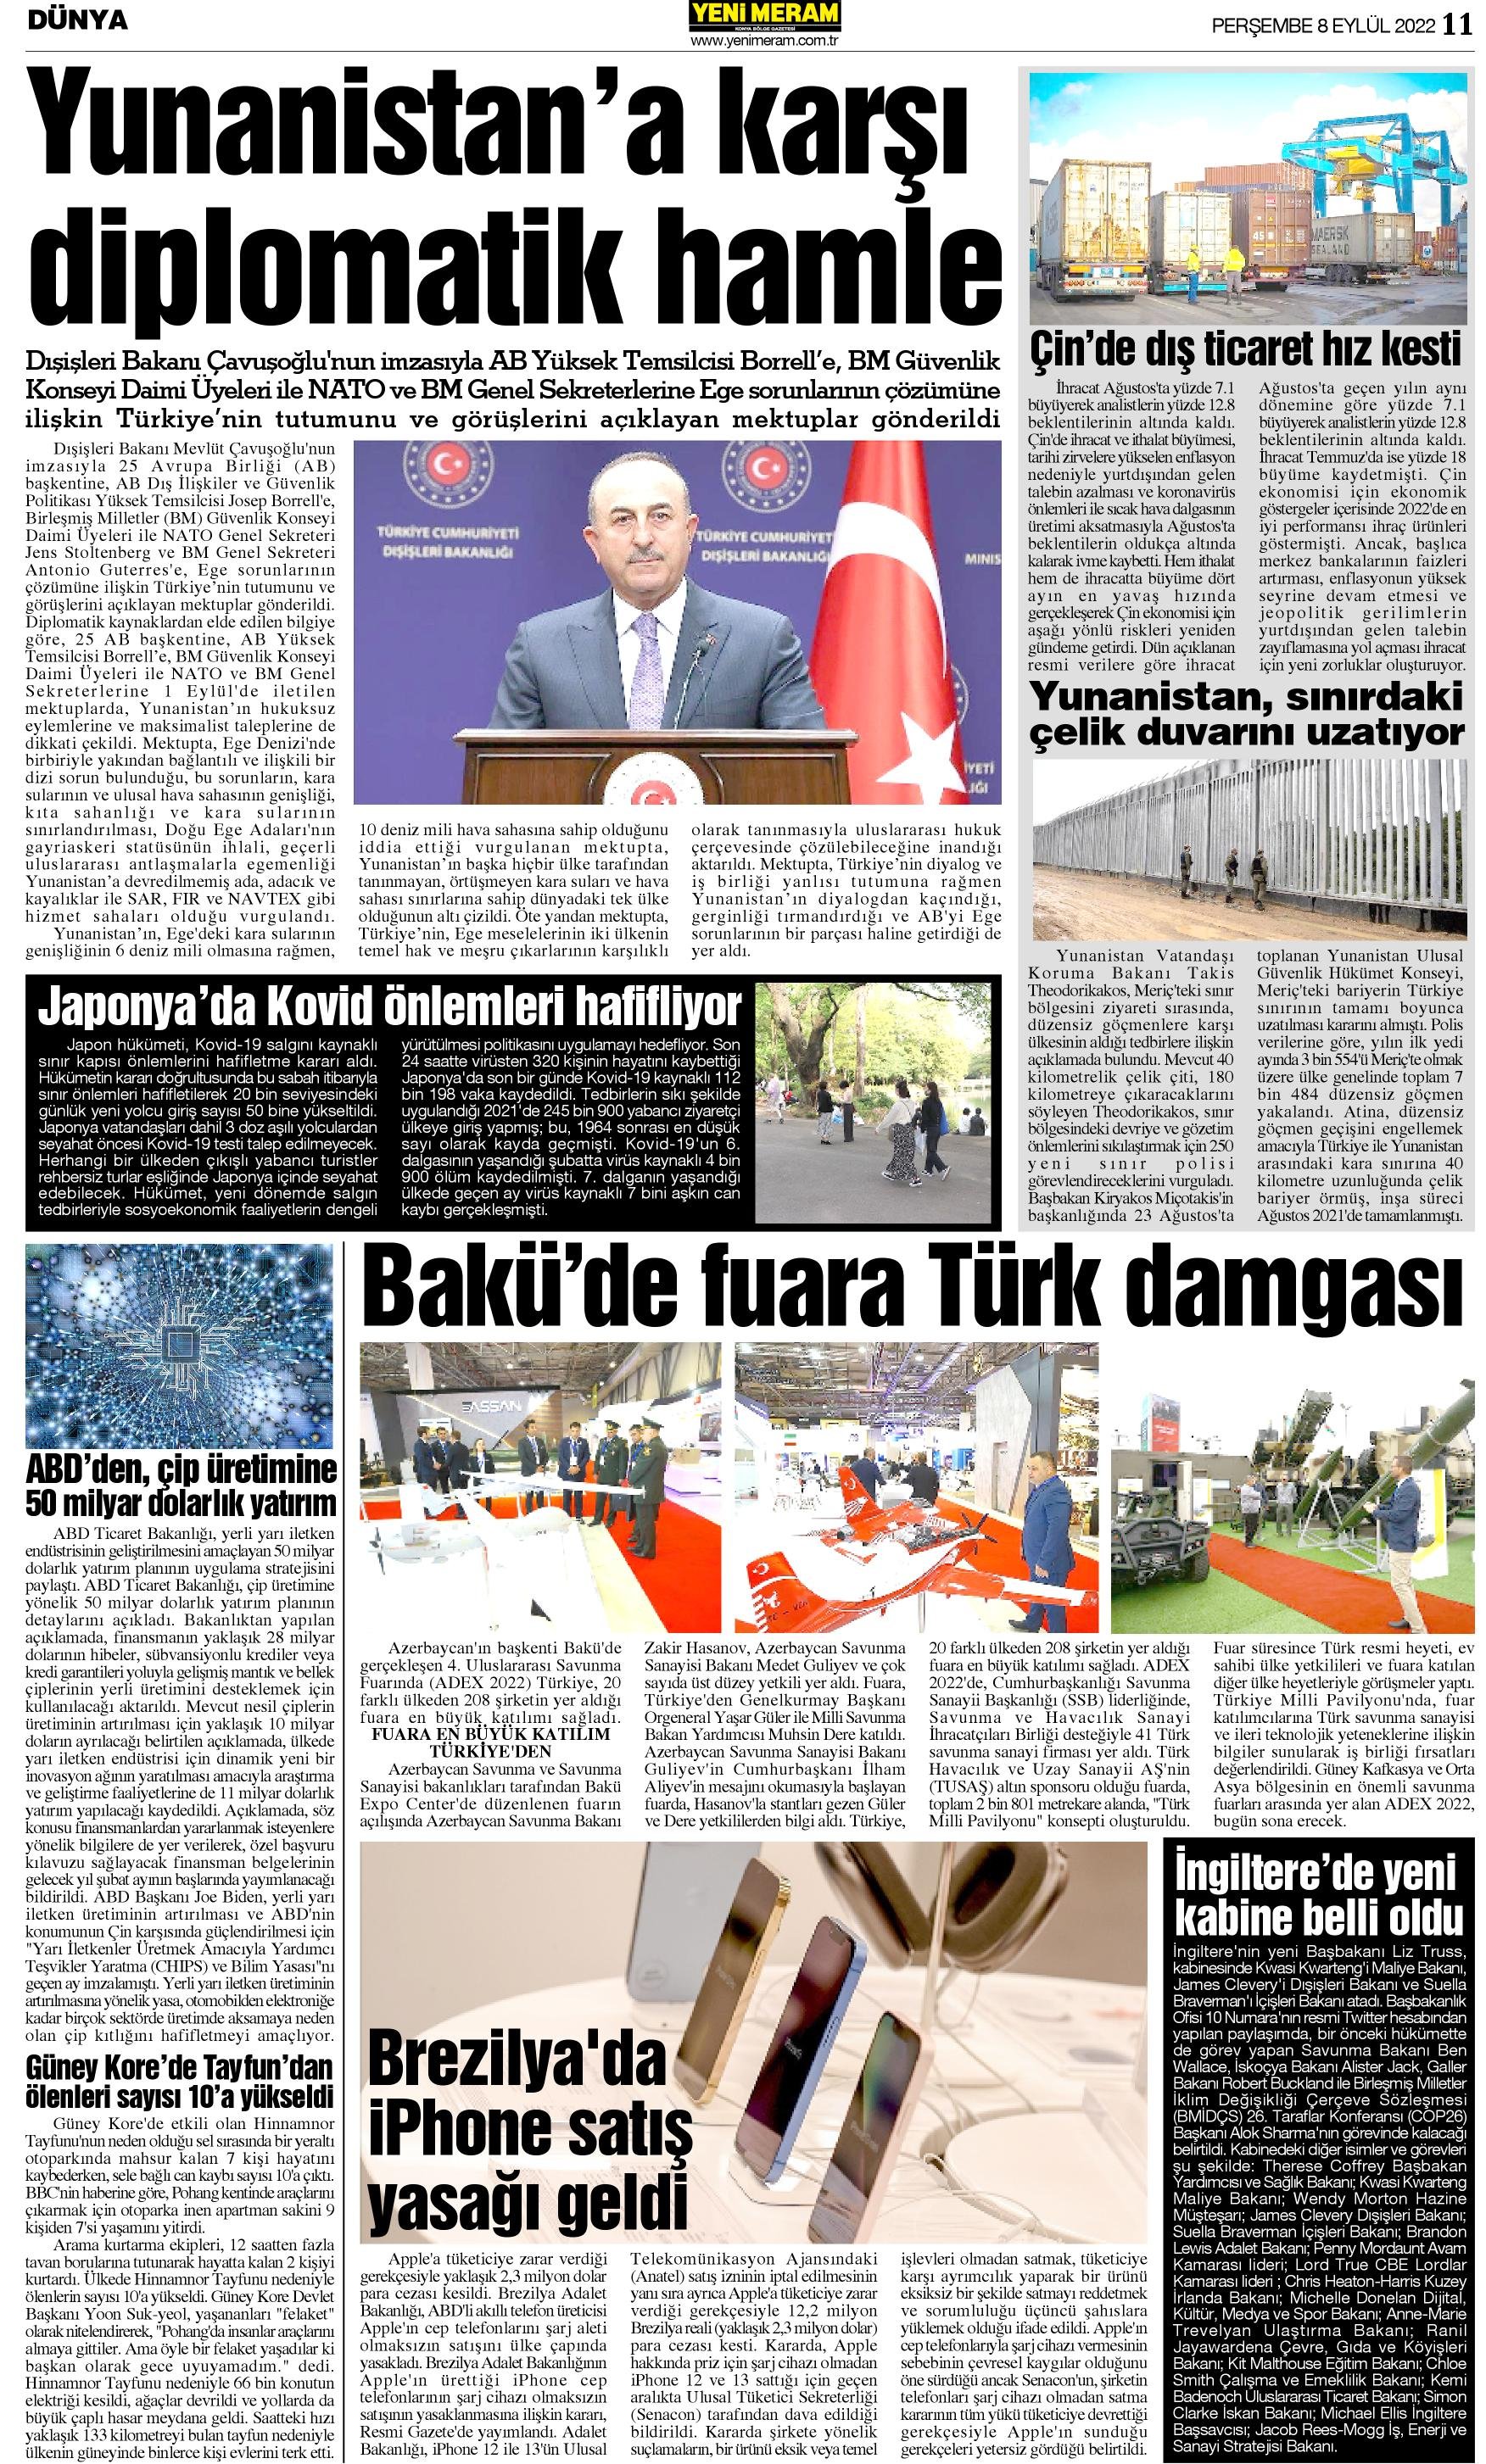 8 Eylül 2022 Yeni Meram Gazetesi
